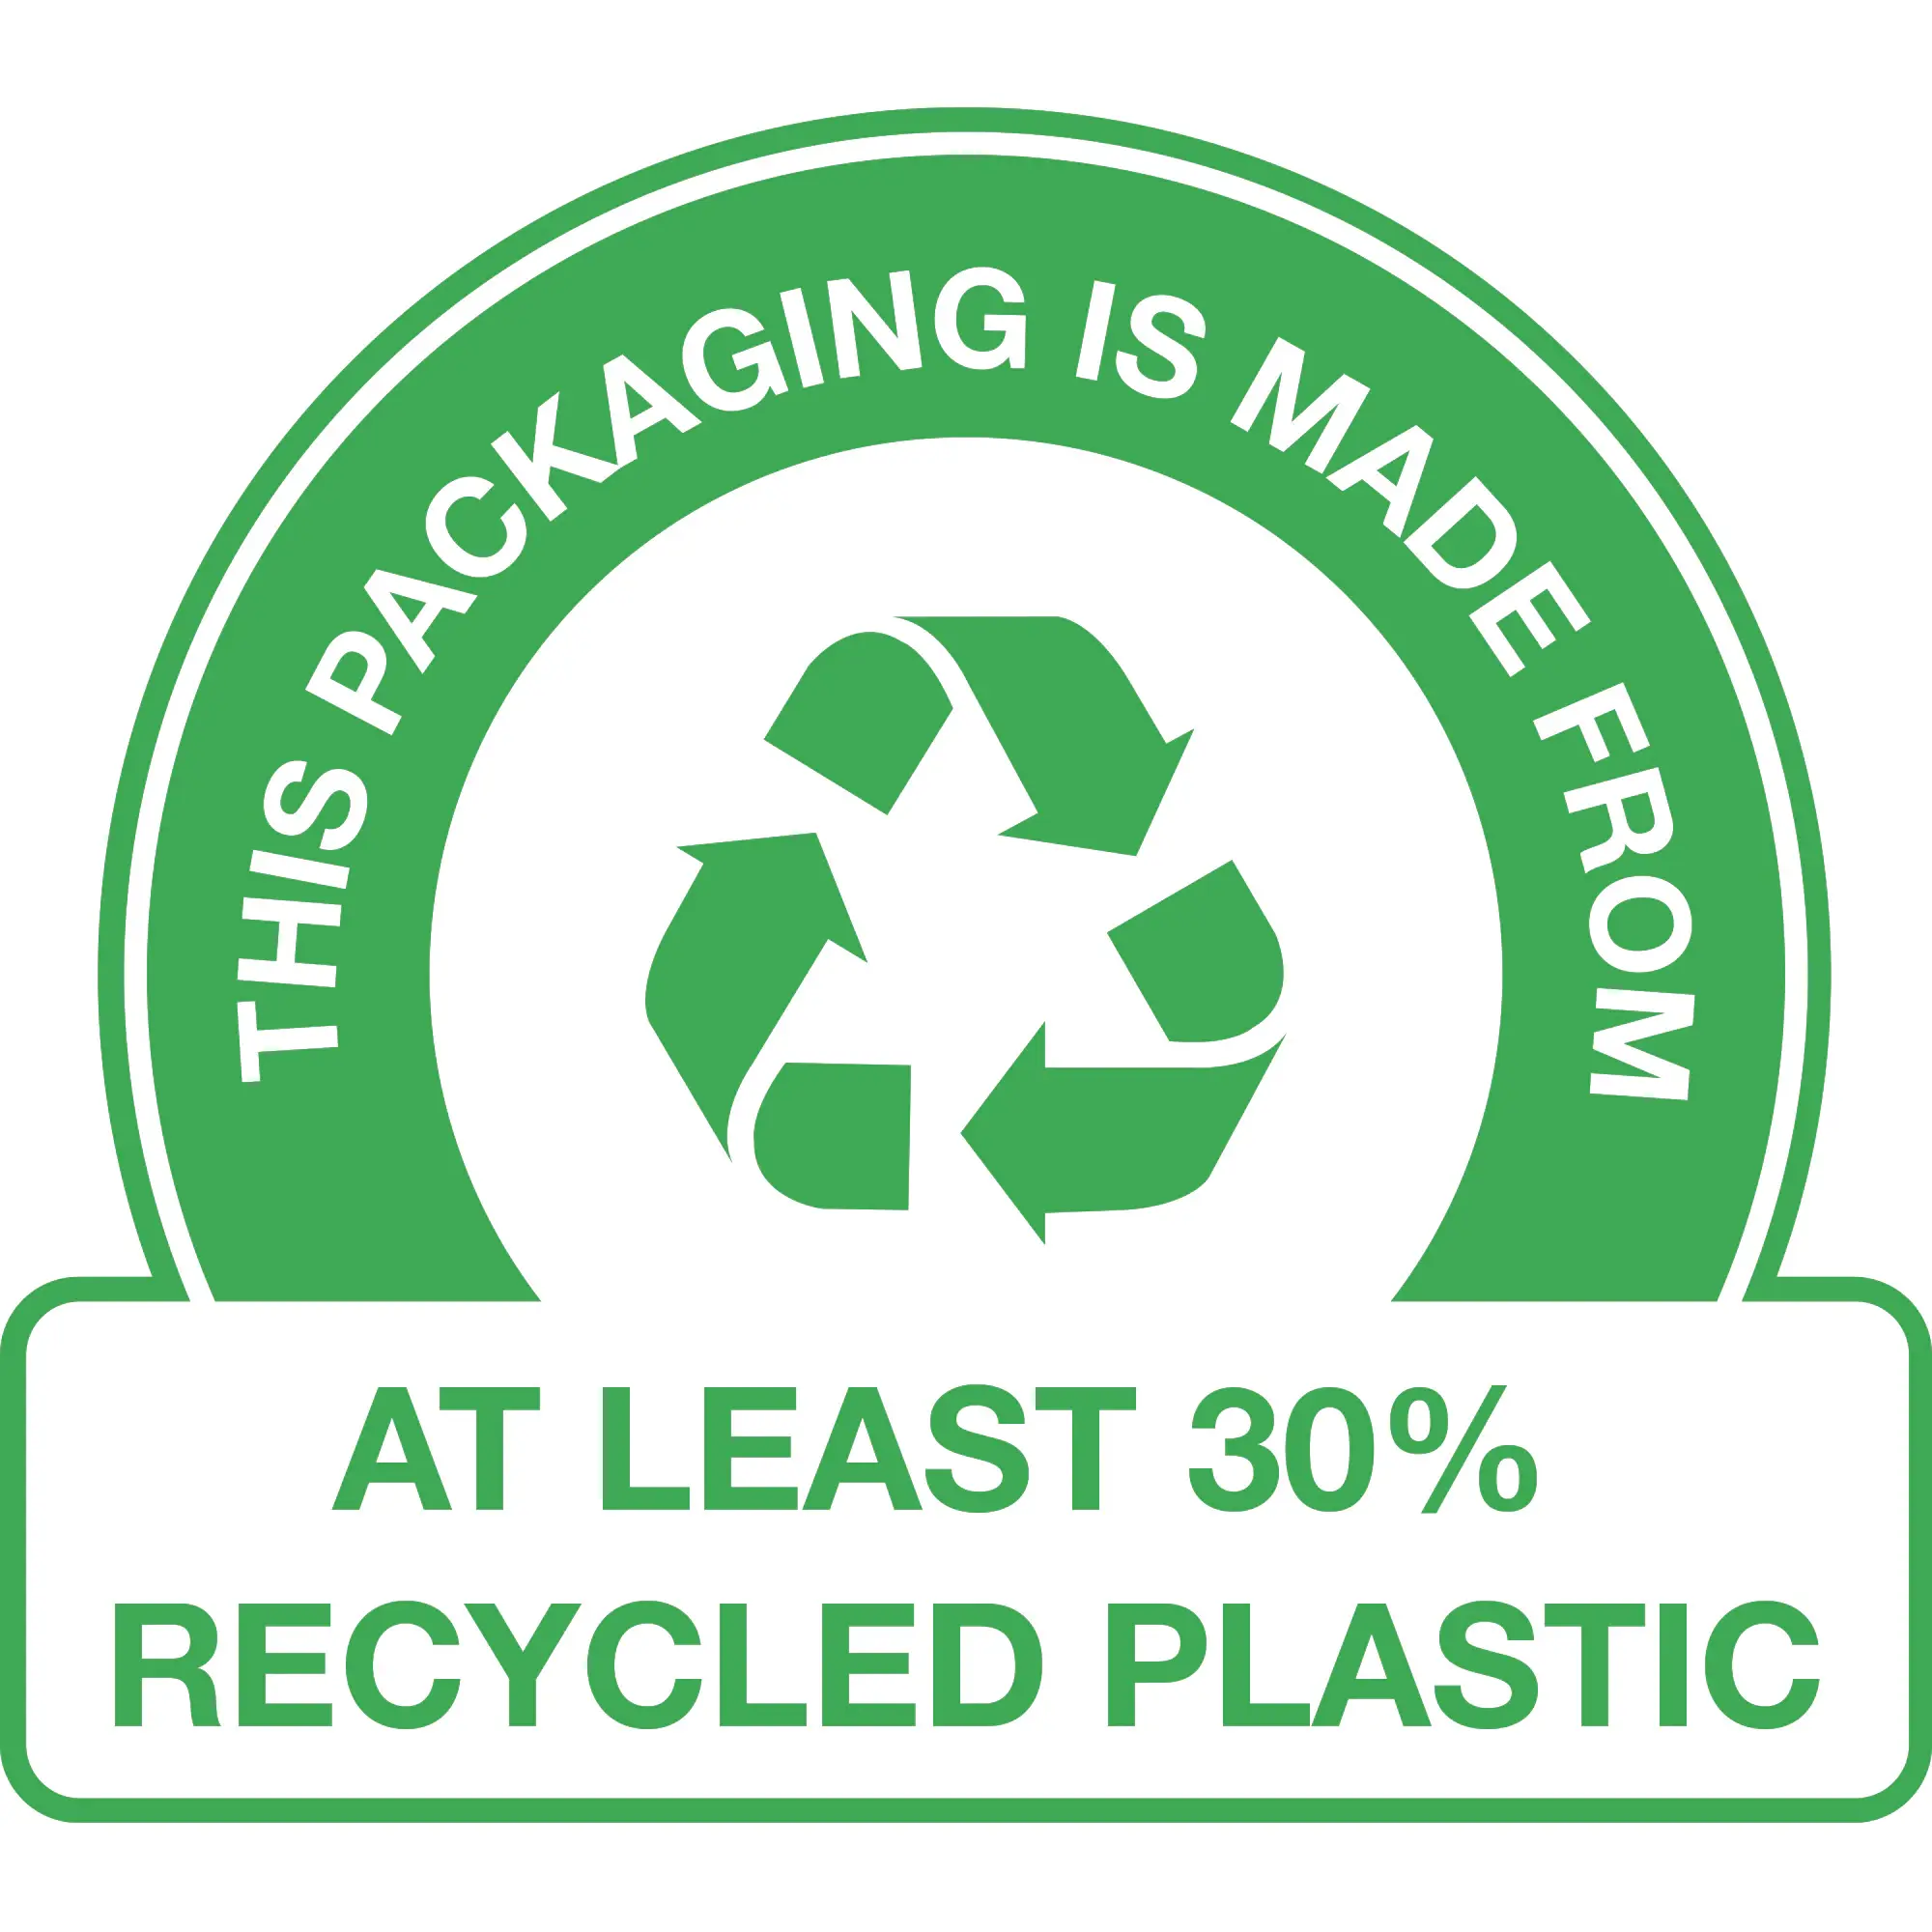 Opakowanie wyprodukowane z plastiku pochodzącego przynajmniej w 30% z recyklingu